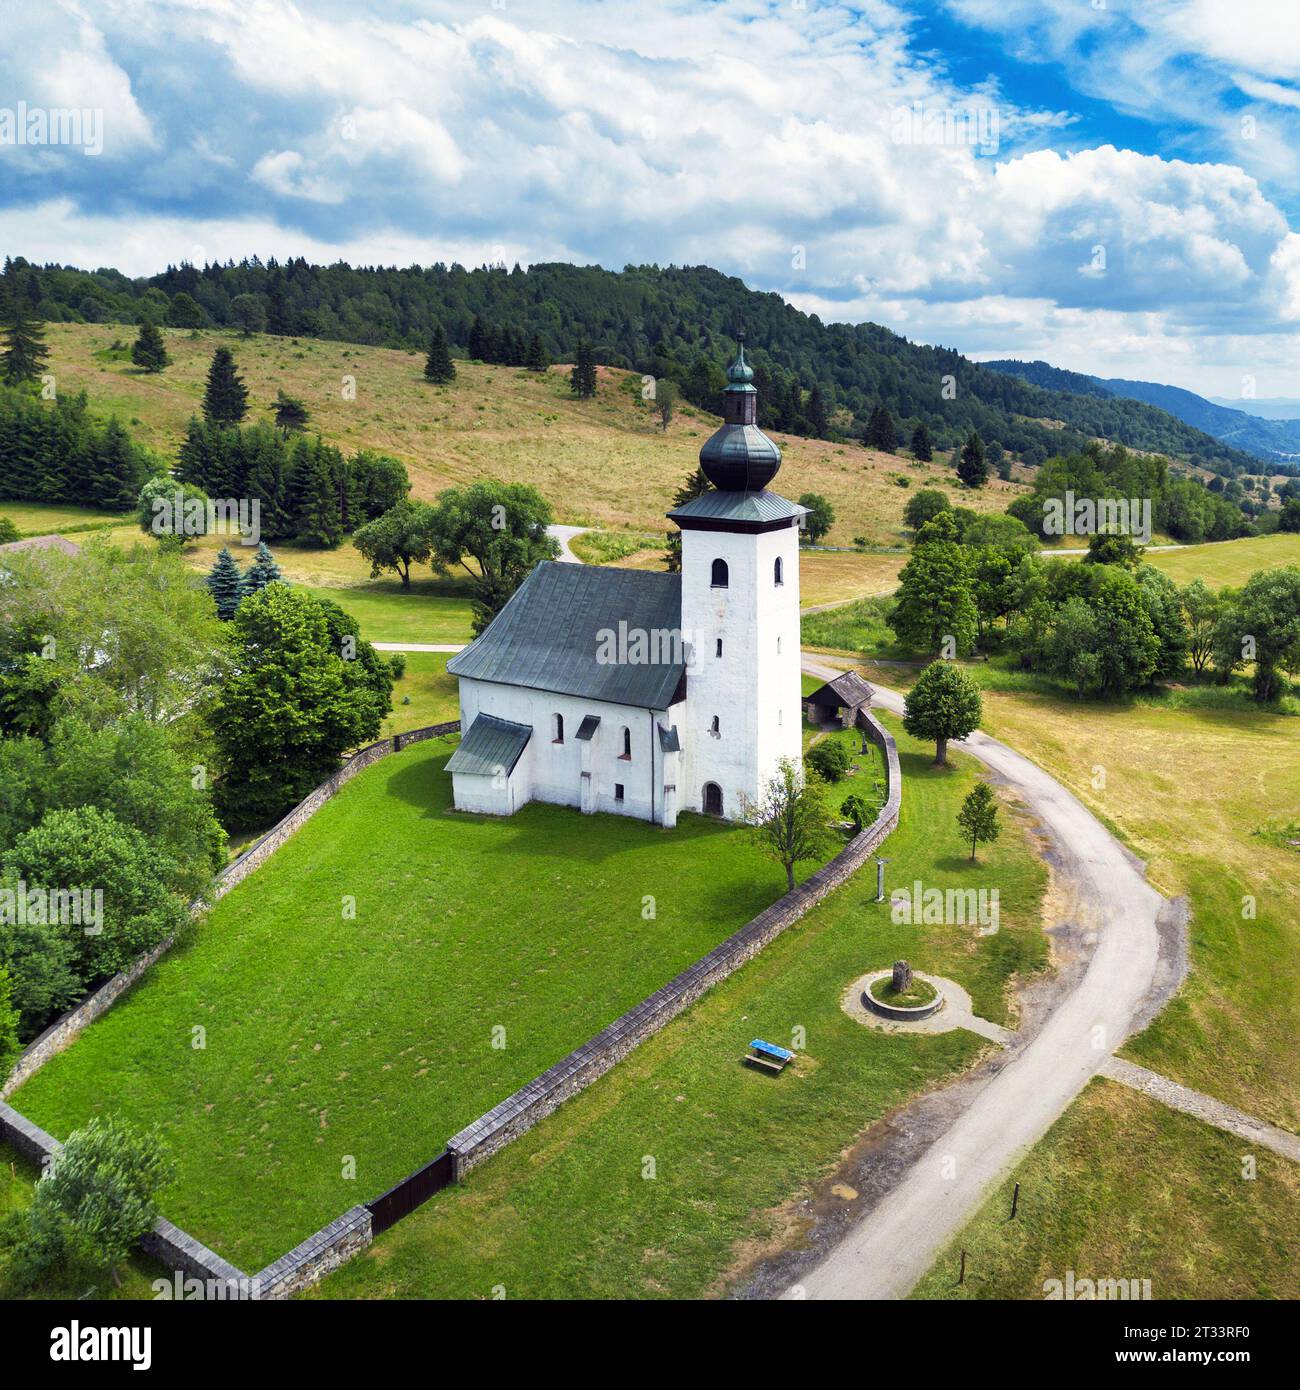 Drone vue de l'église, le centre géographique slovaque de l'Europe dans la localité de Kremnicke Bane en Slovaquie Banque D'Images